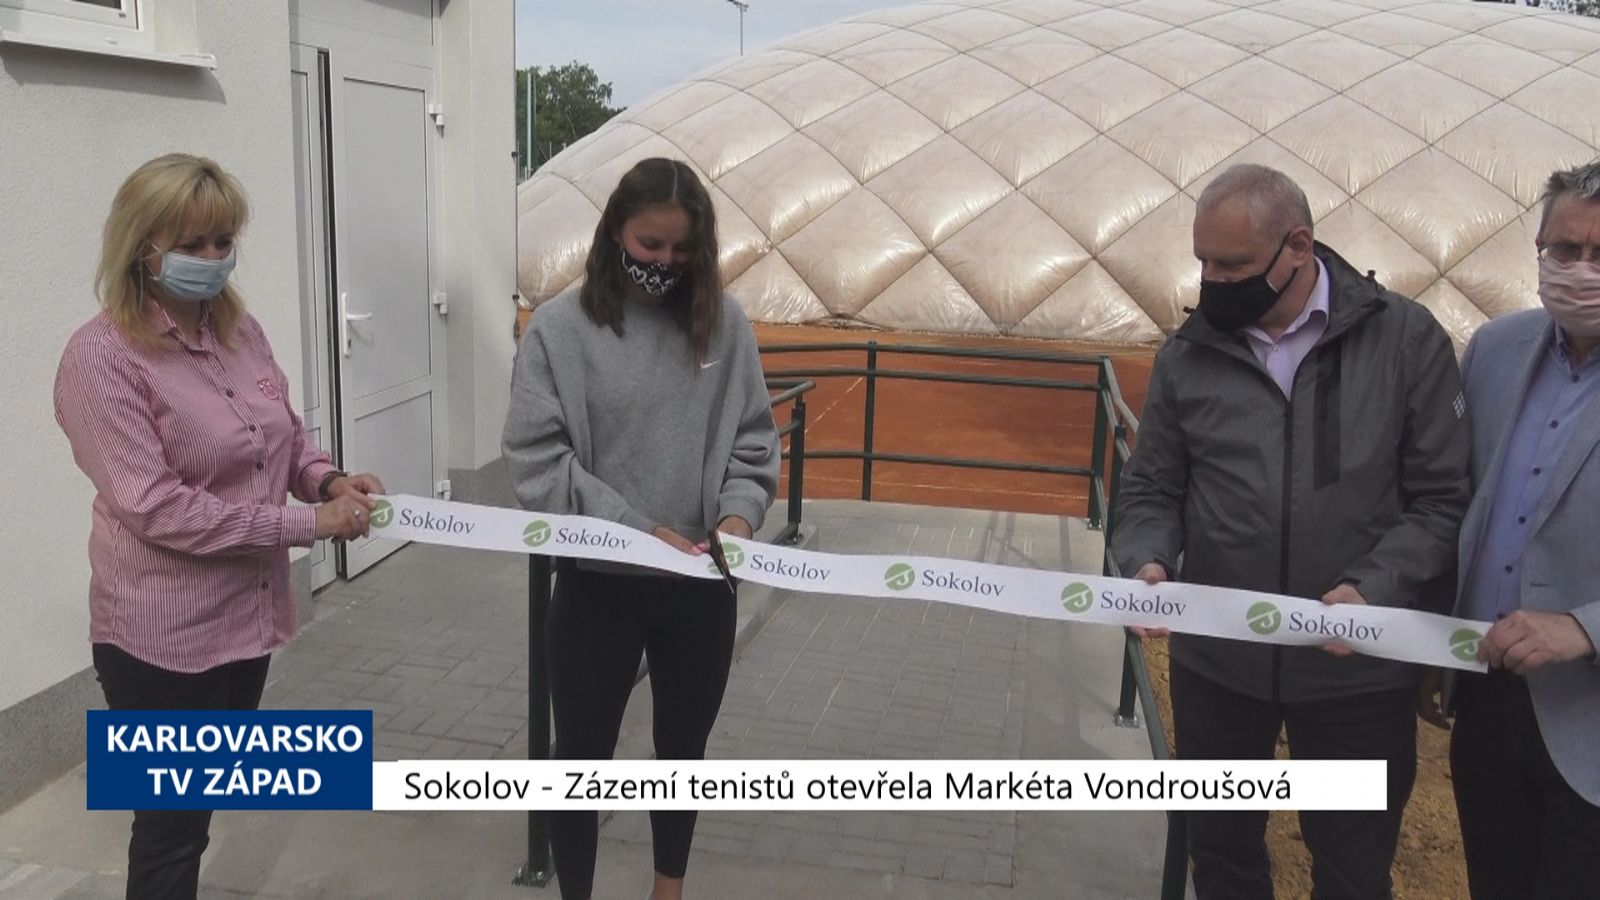 Sokolov: Nové zázemí tenistů otevřela Markéta Vondroušová (TV Západ)